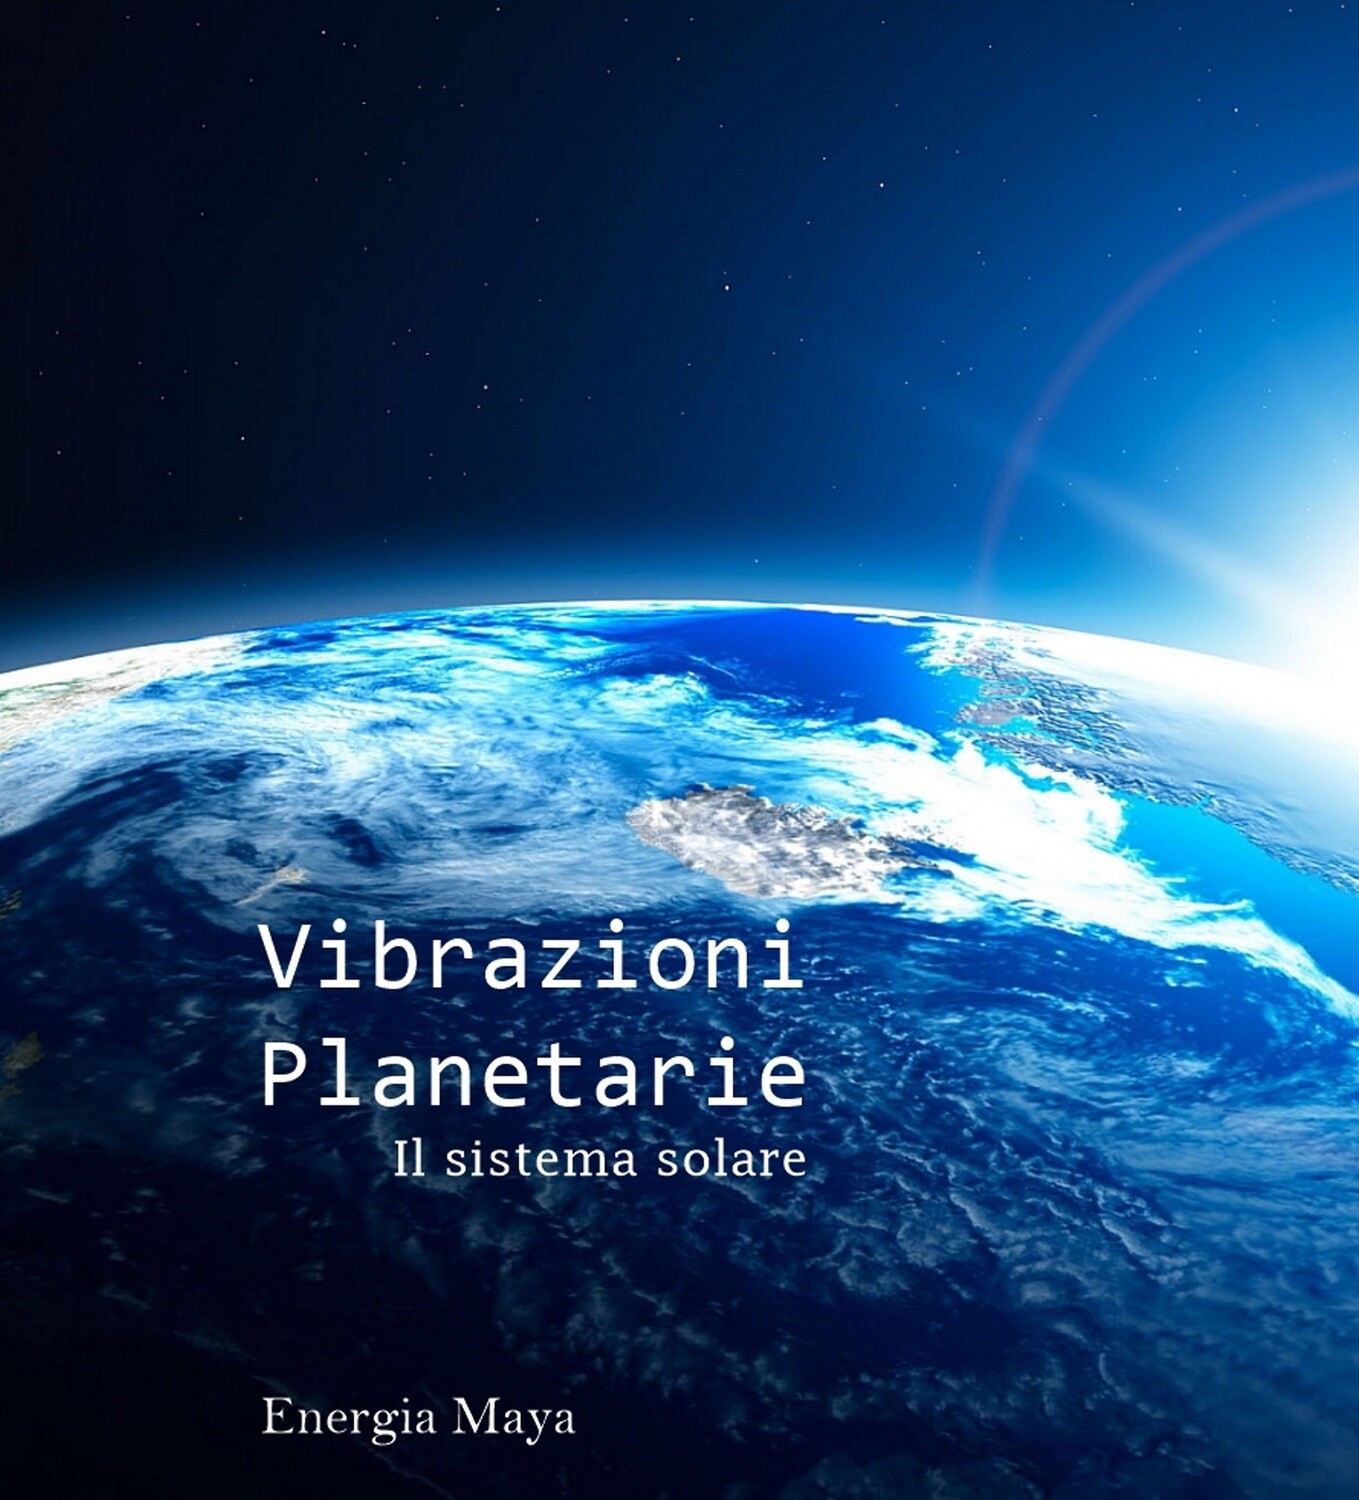 Vibrazioni planetarie (il sistema solare)